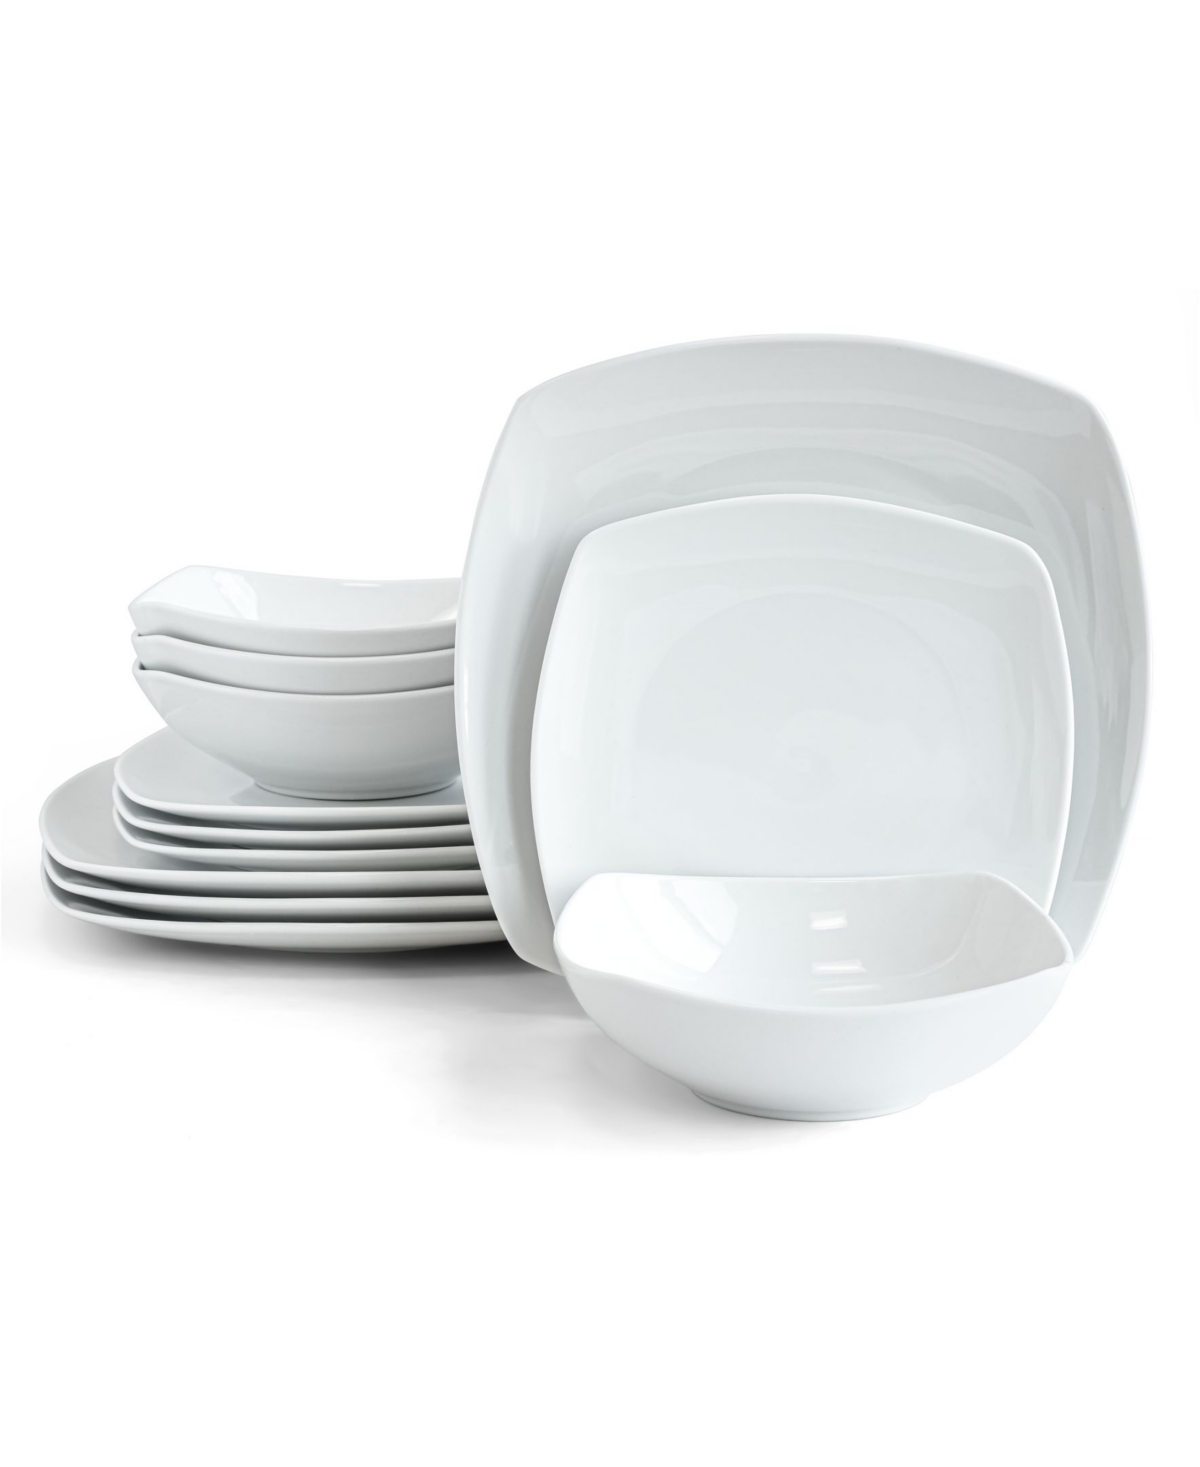 Monterey 12 Piece Dinnerware set, Service for 4 - White